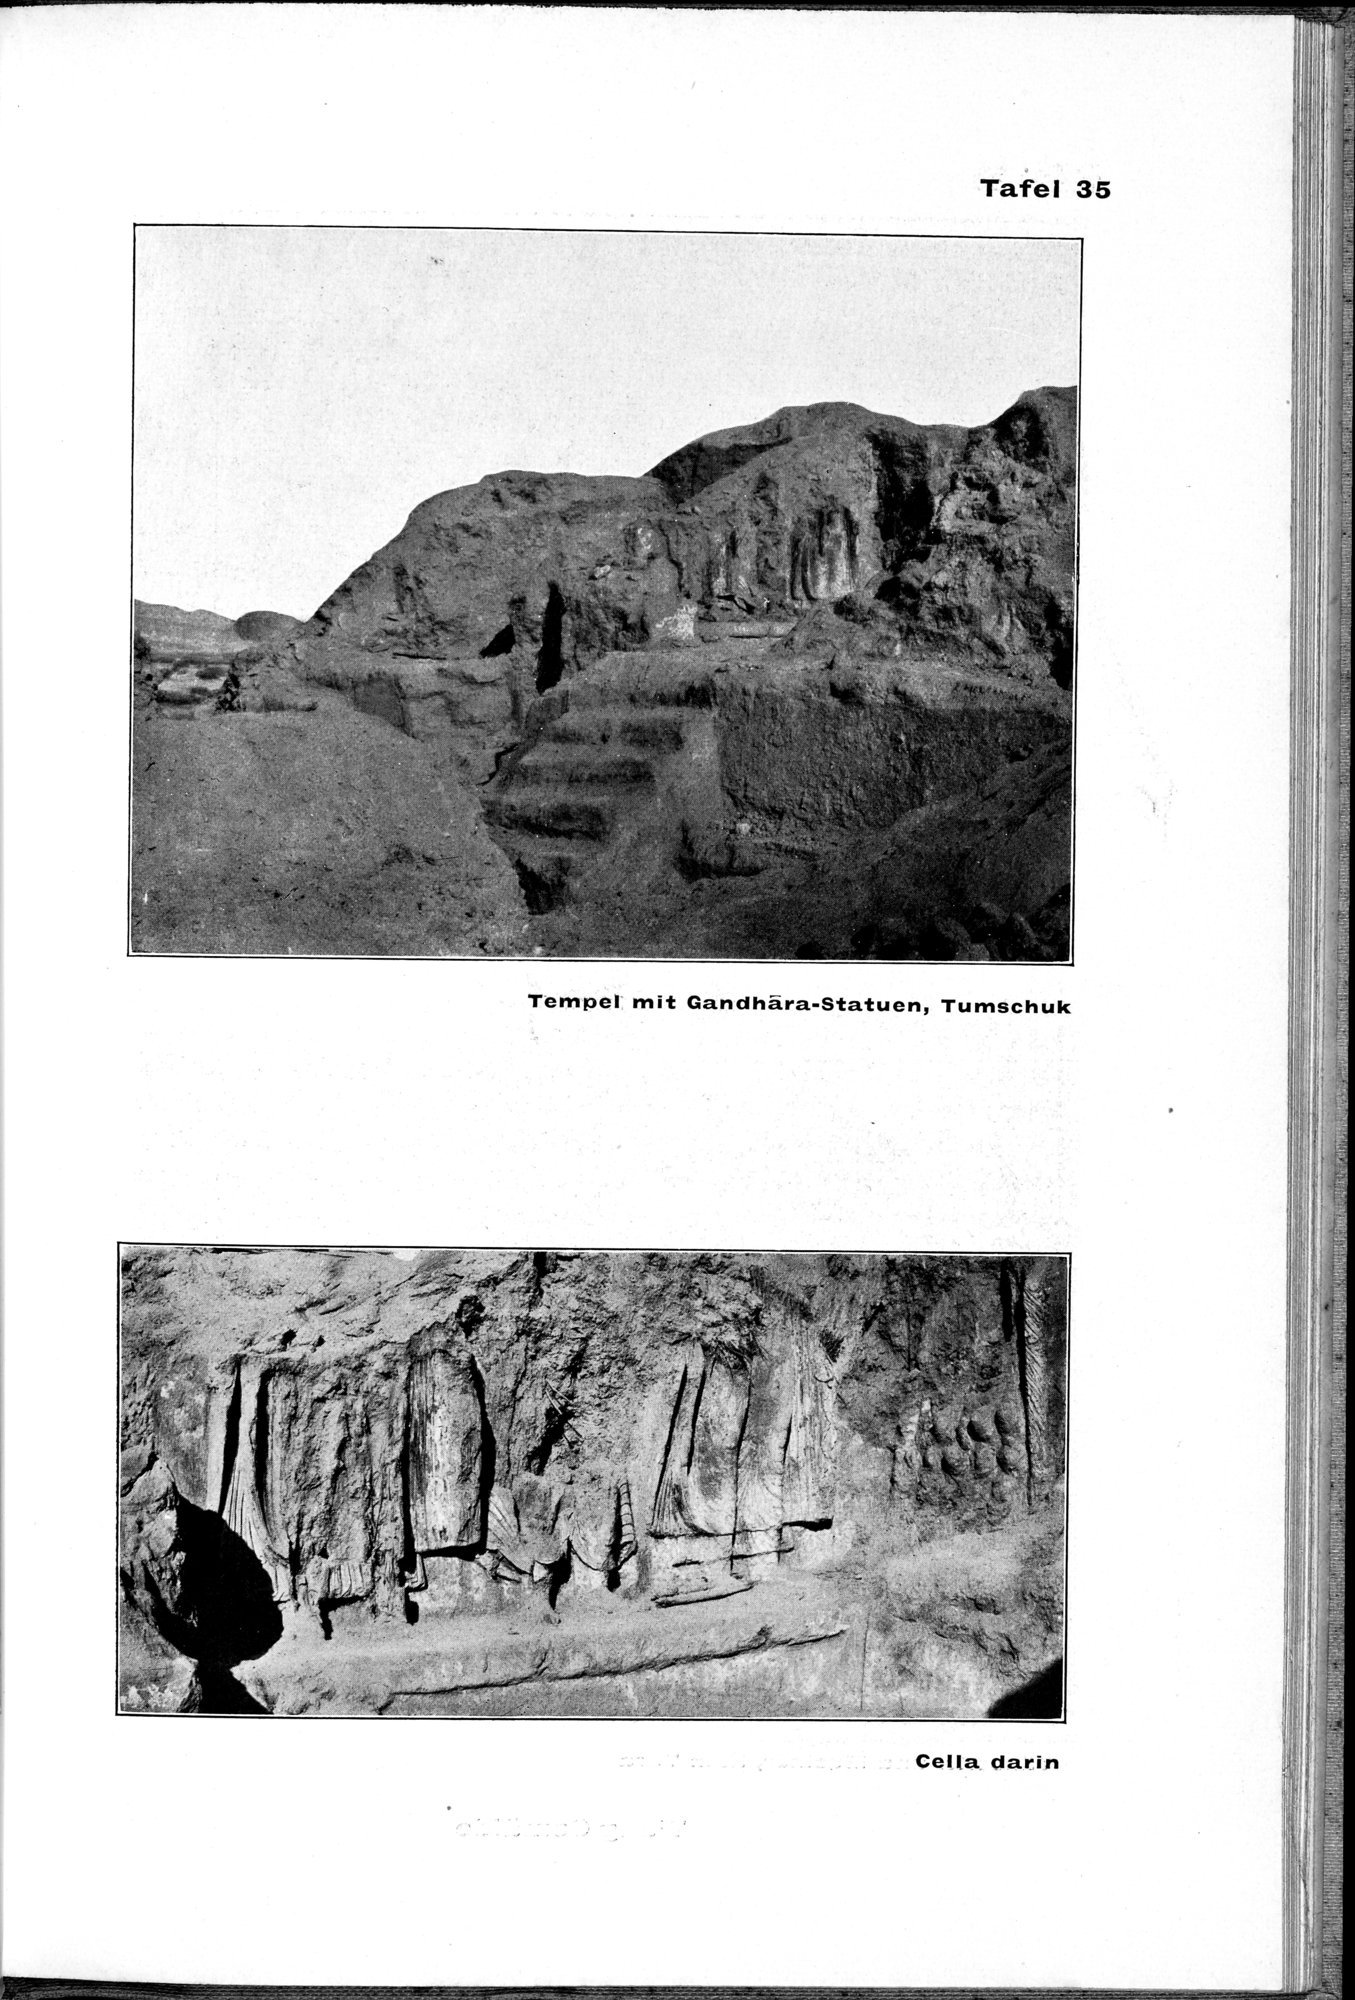 Von Land und Leuten in Ostturkistan : vol.1 / Page 183 (Grayscale High Resolution Image)